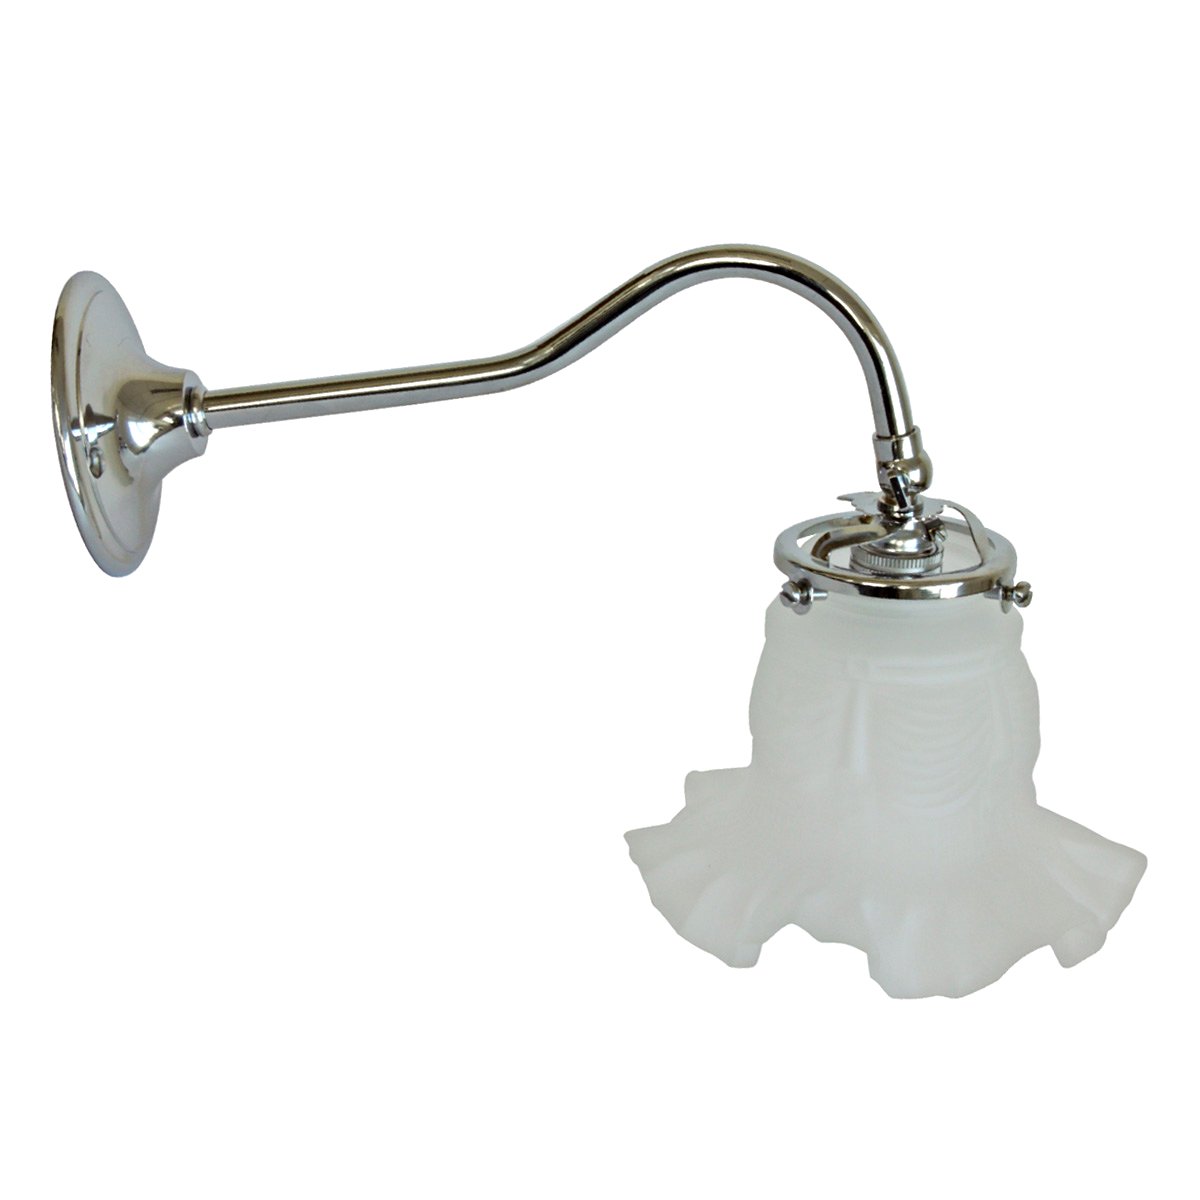 Zierliche Glas-Wandlampe am geschwungenen Arm: Die nostalgische Wandlampe, hier mit dem floralen Glas-Typ 260 (Messing verchromt)